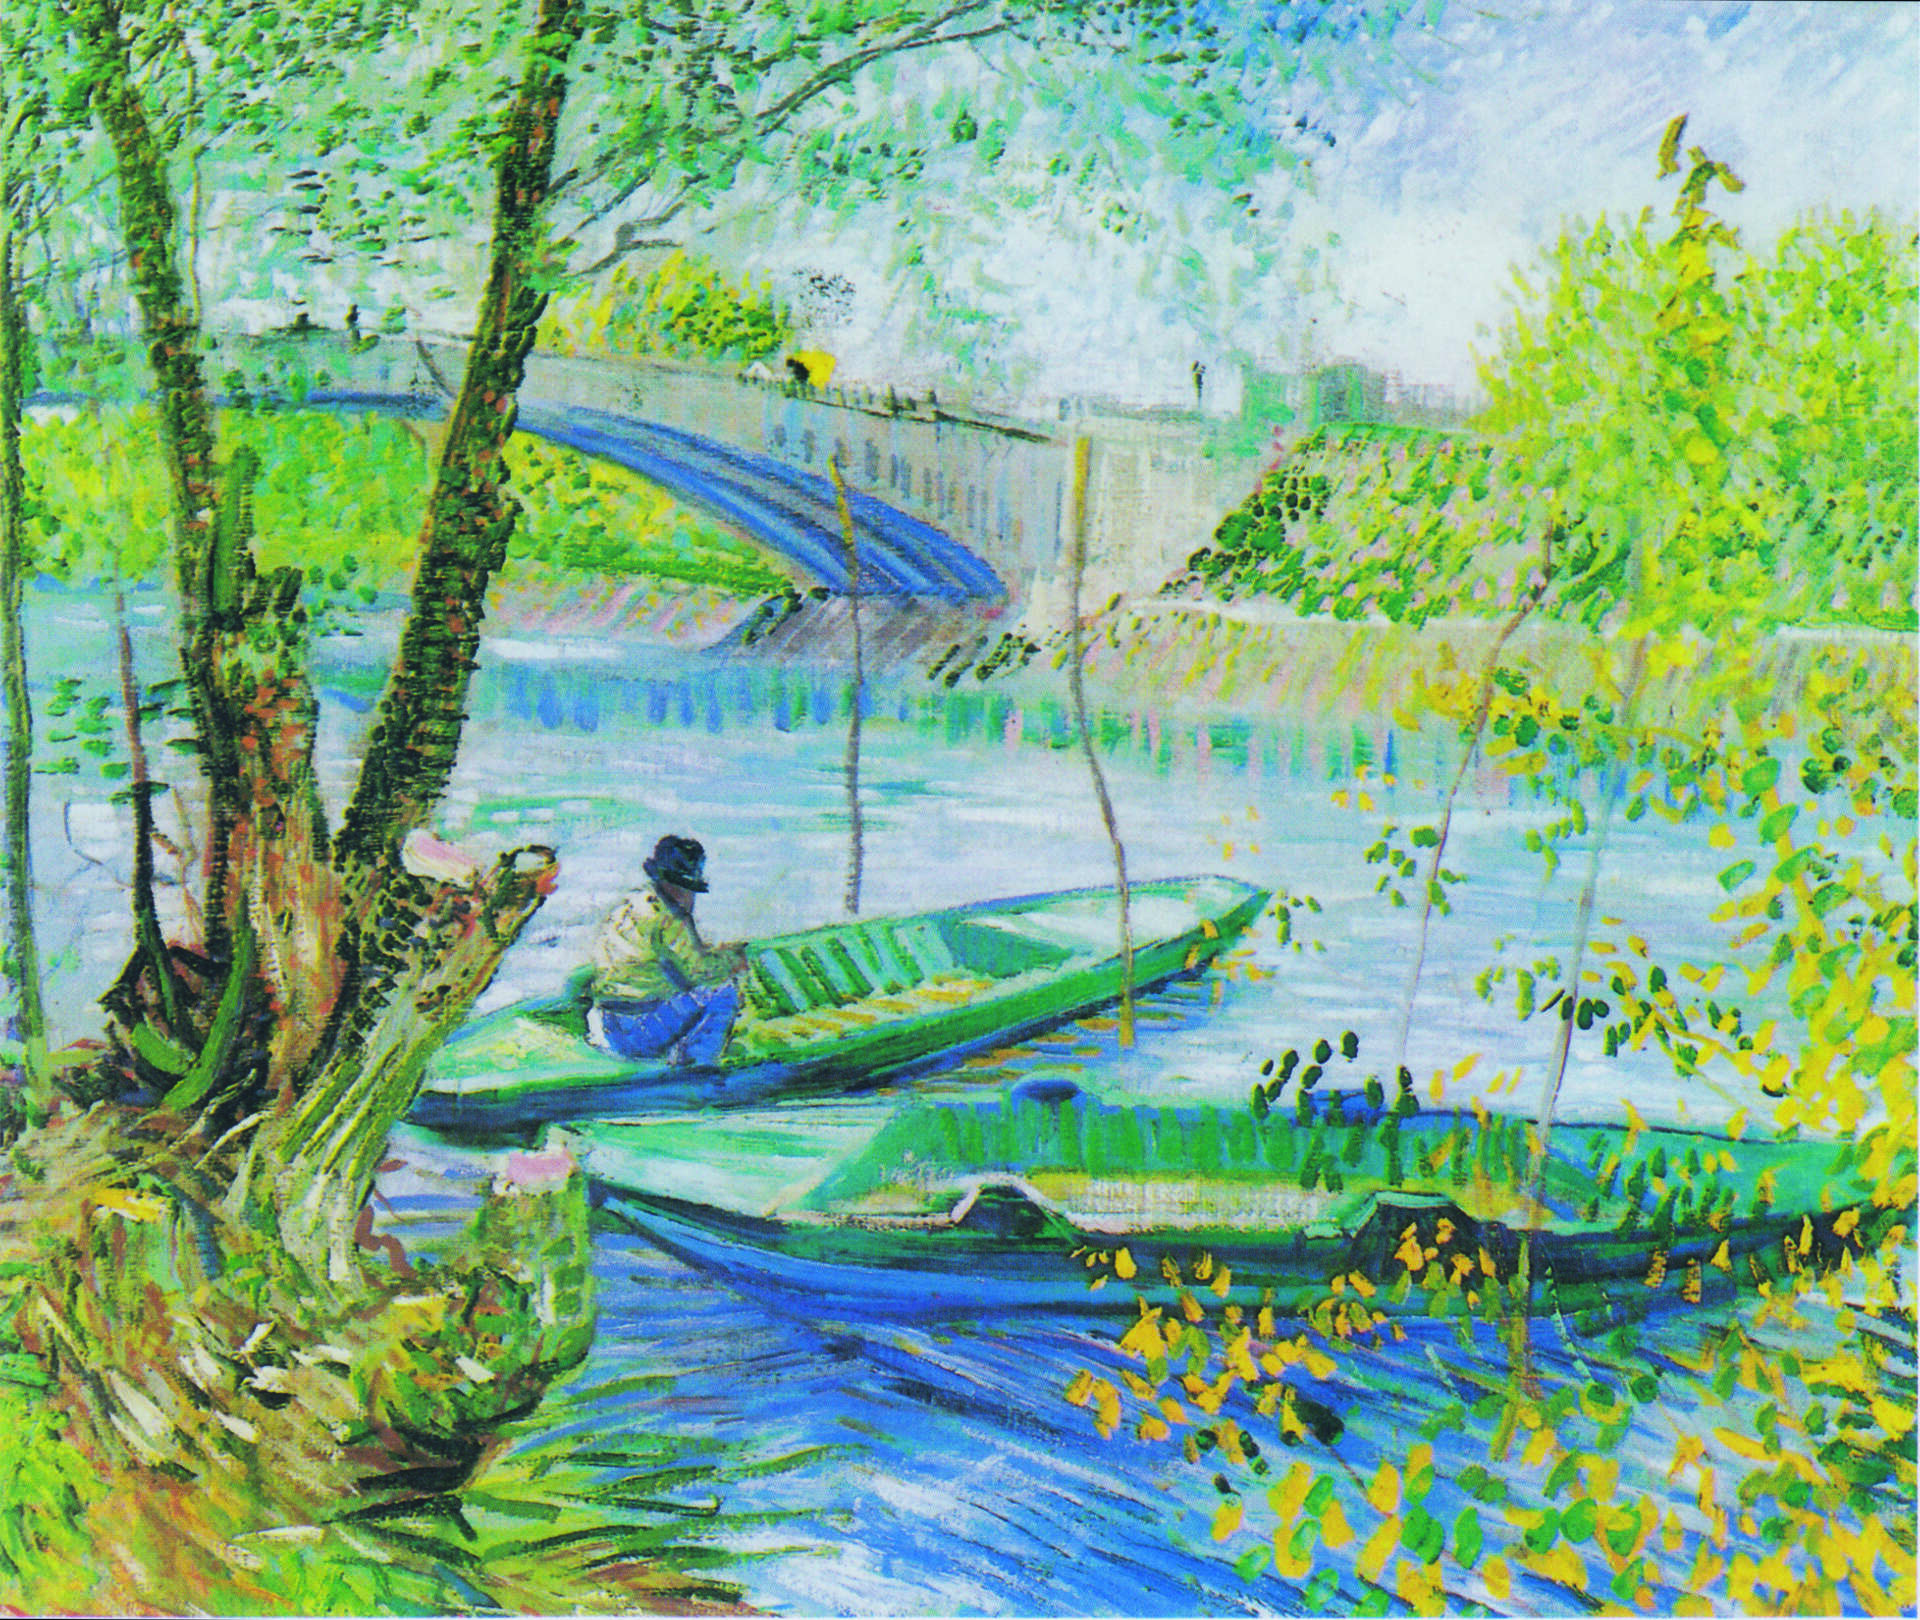 Sur la trace des Impressionnistes à Asnières-sur-Seine, tableau de Van Gogh, La pêche au printemps © Art Institute of Chicago